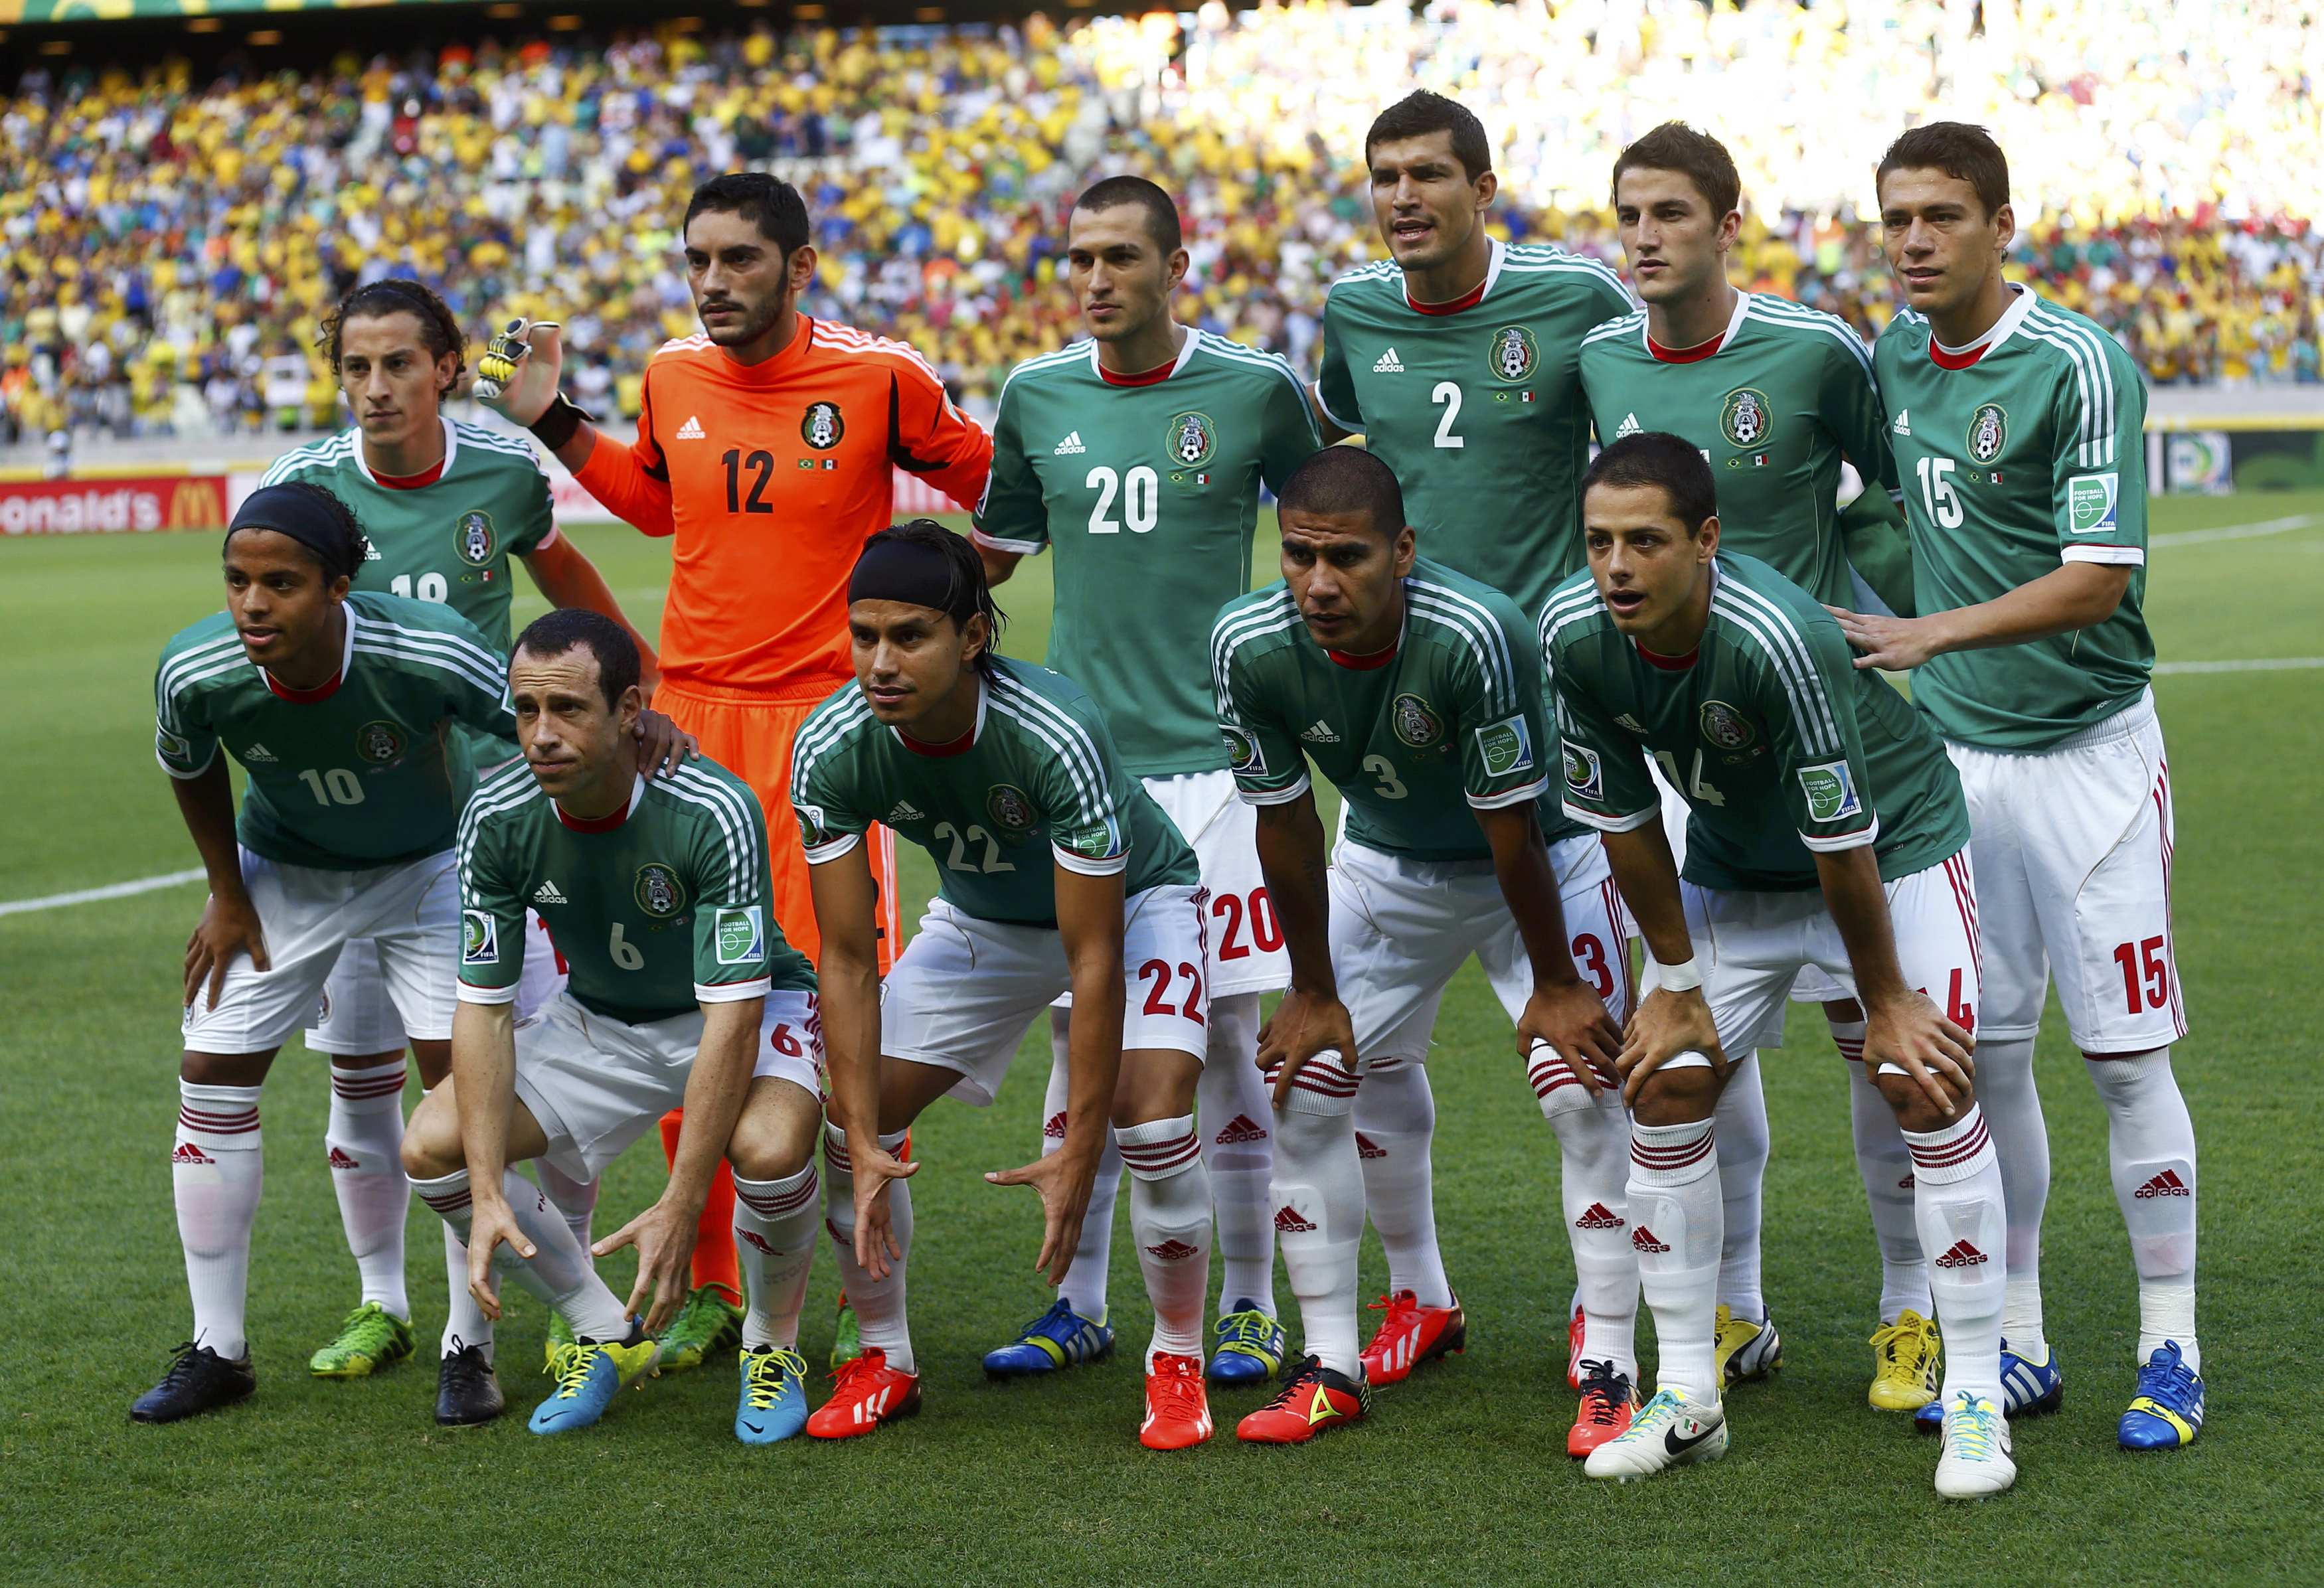 Mexico Soccer Logo / Mexico Soccer Team 2015 Wallpapers - Wallpaper